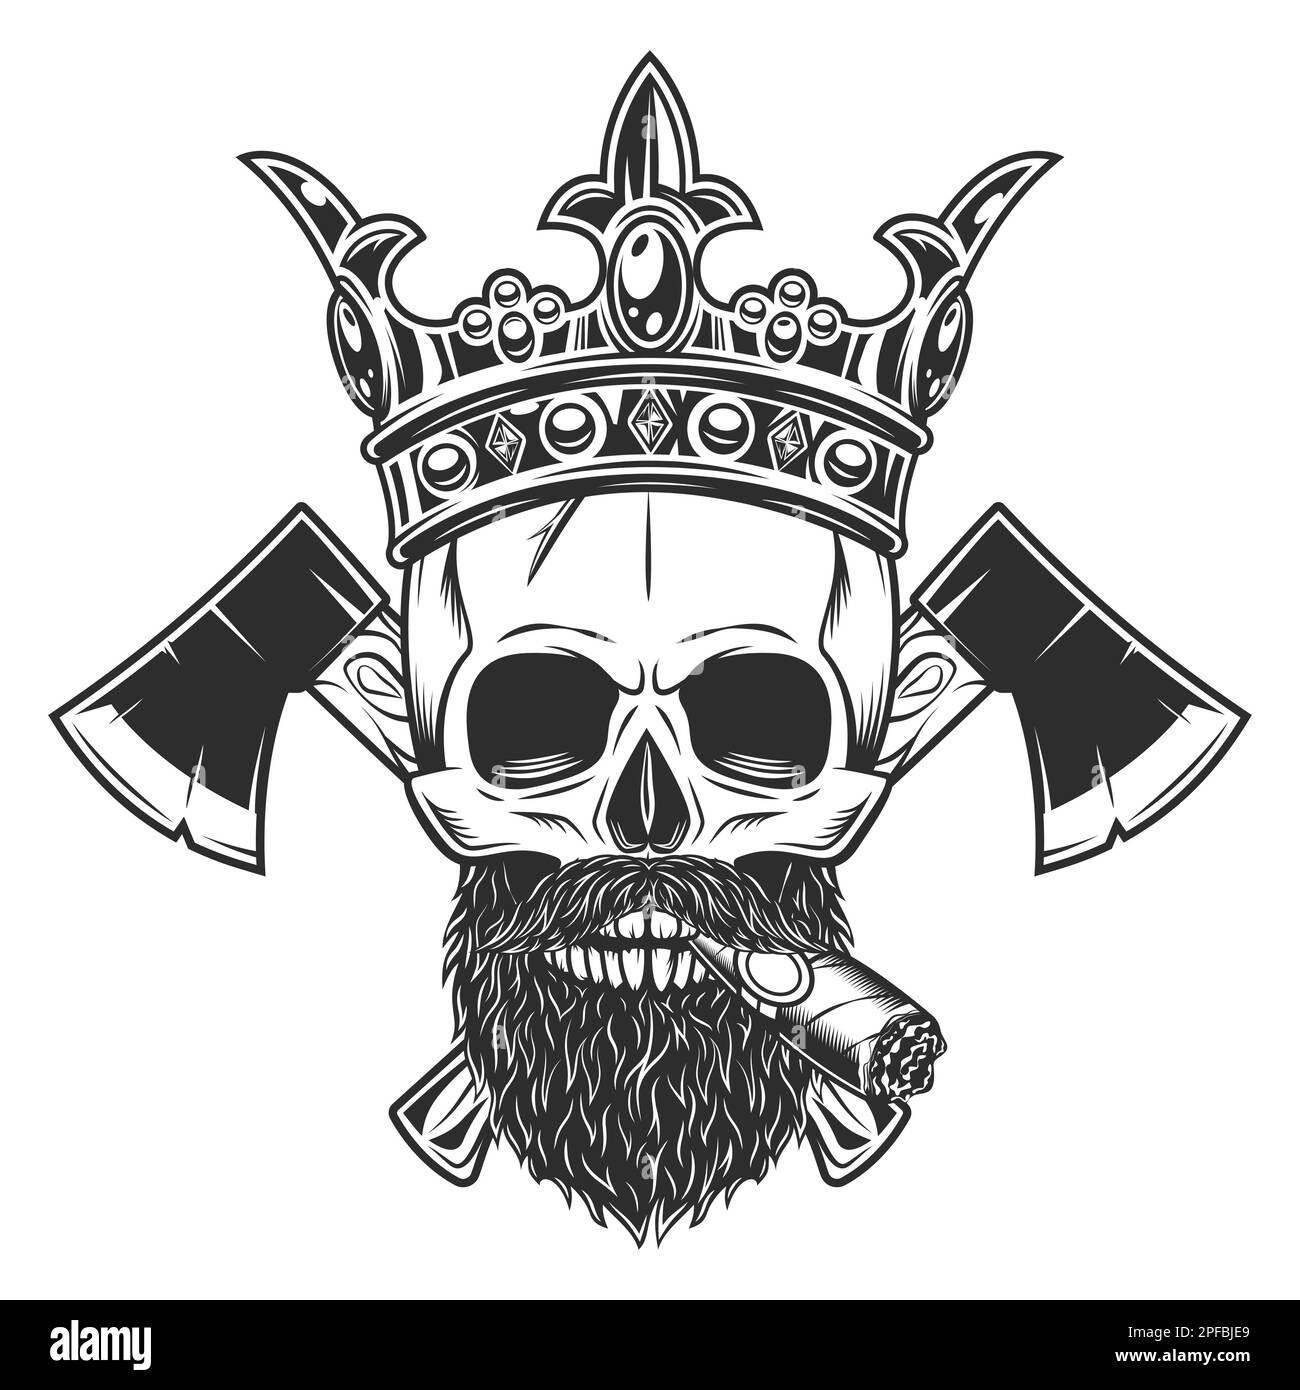 Crâne fumant un cigare ou une cigarette dans la couronne royale roi avec la moustache et la barbe et croix de bois entreprise menuiserie ou emblème de bûcheron Illustration de Vecteur